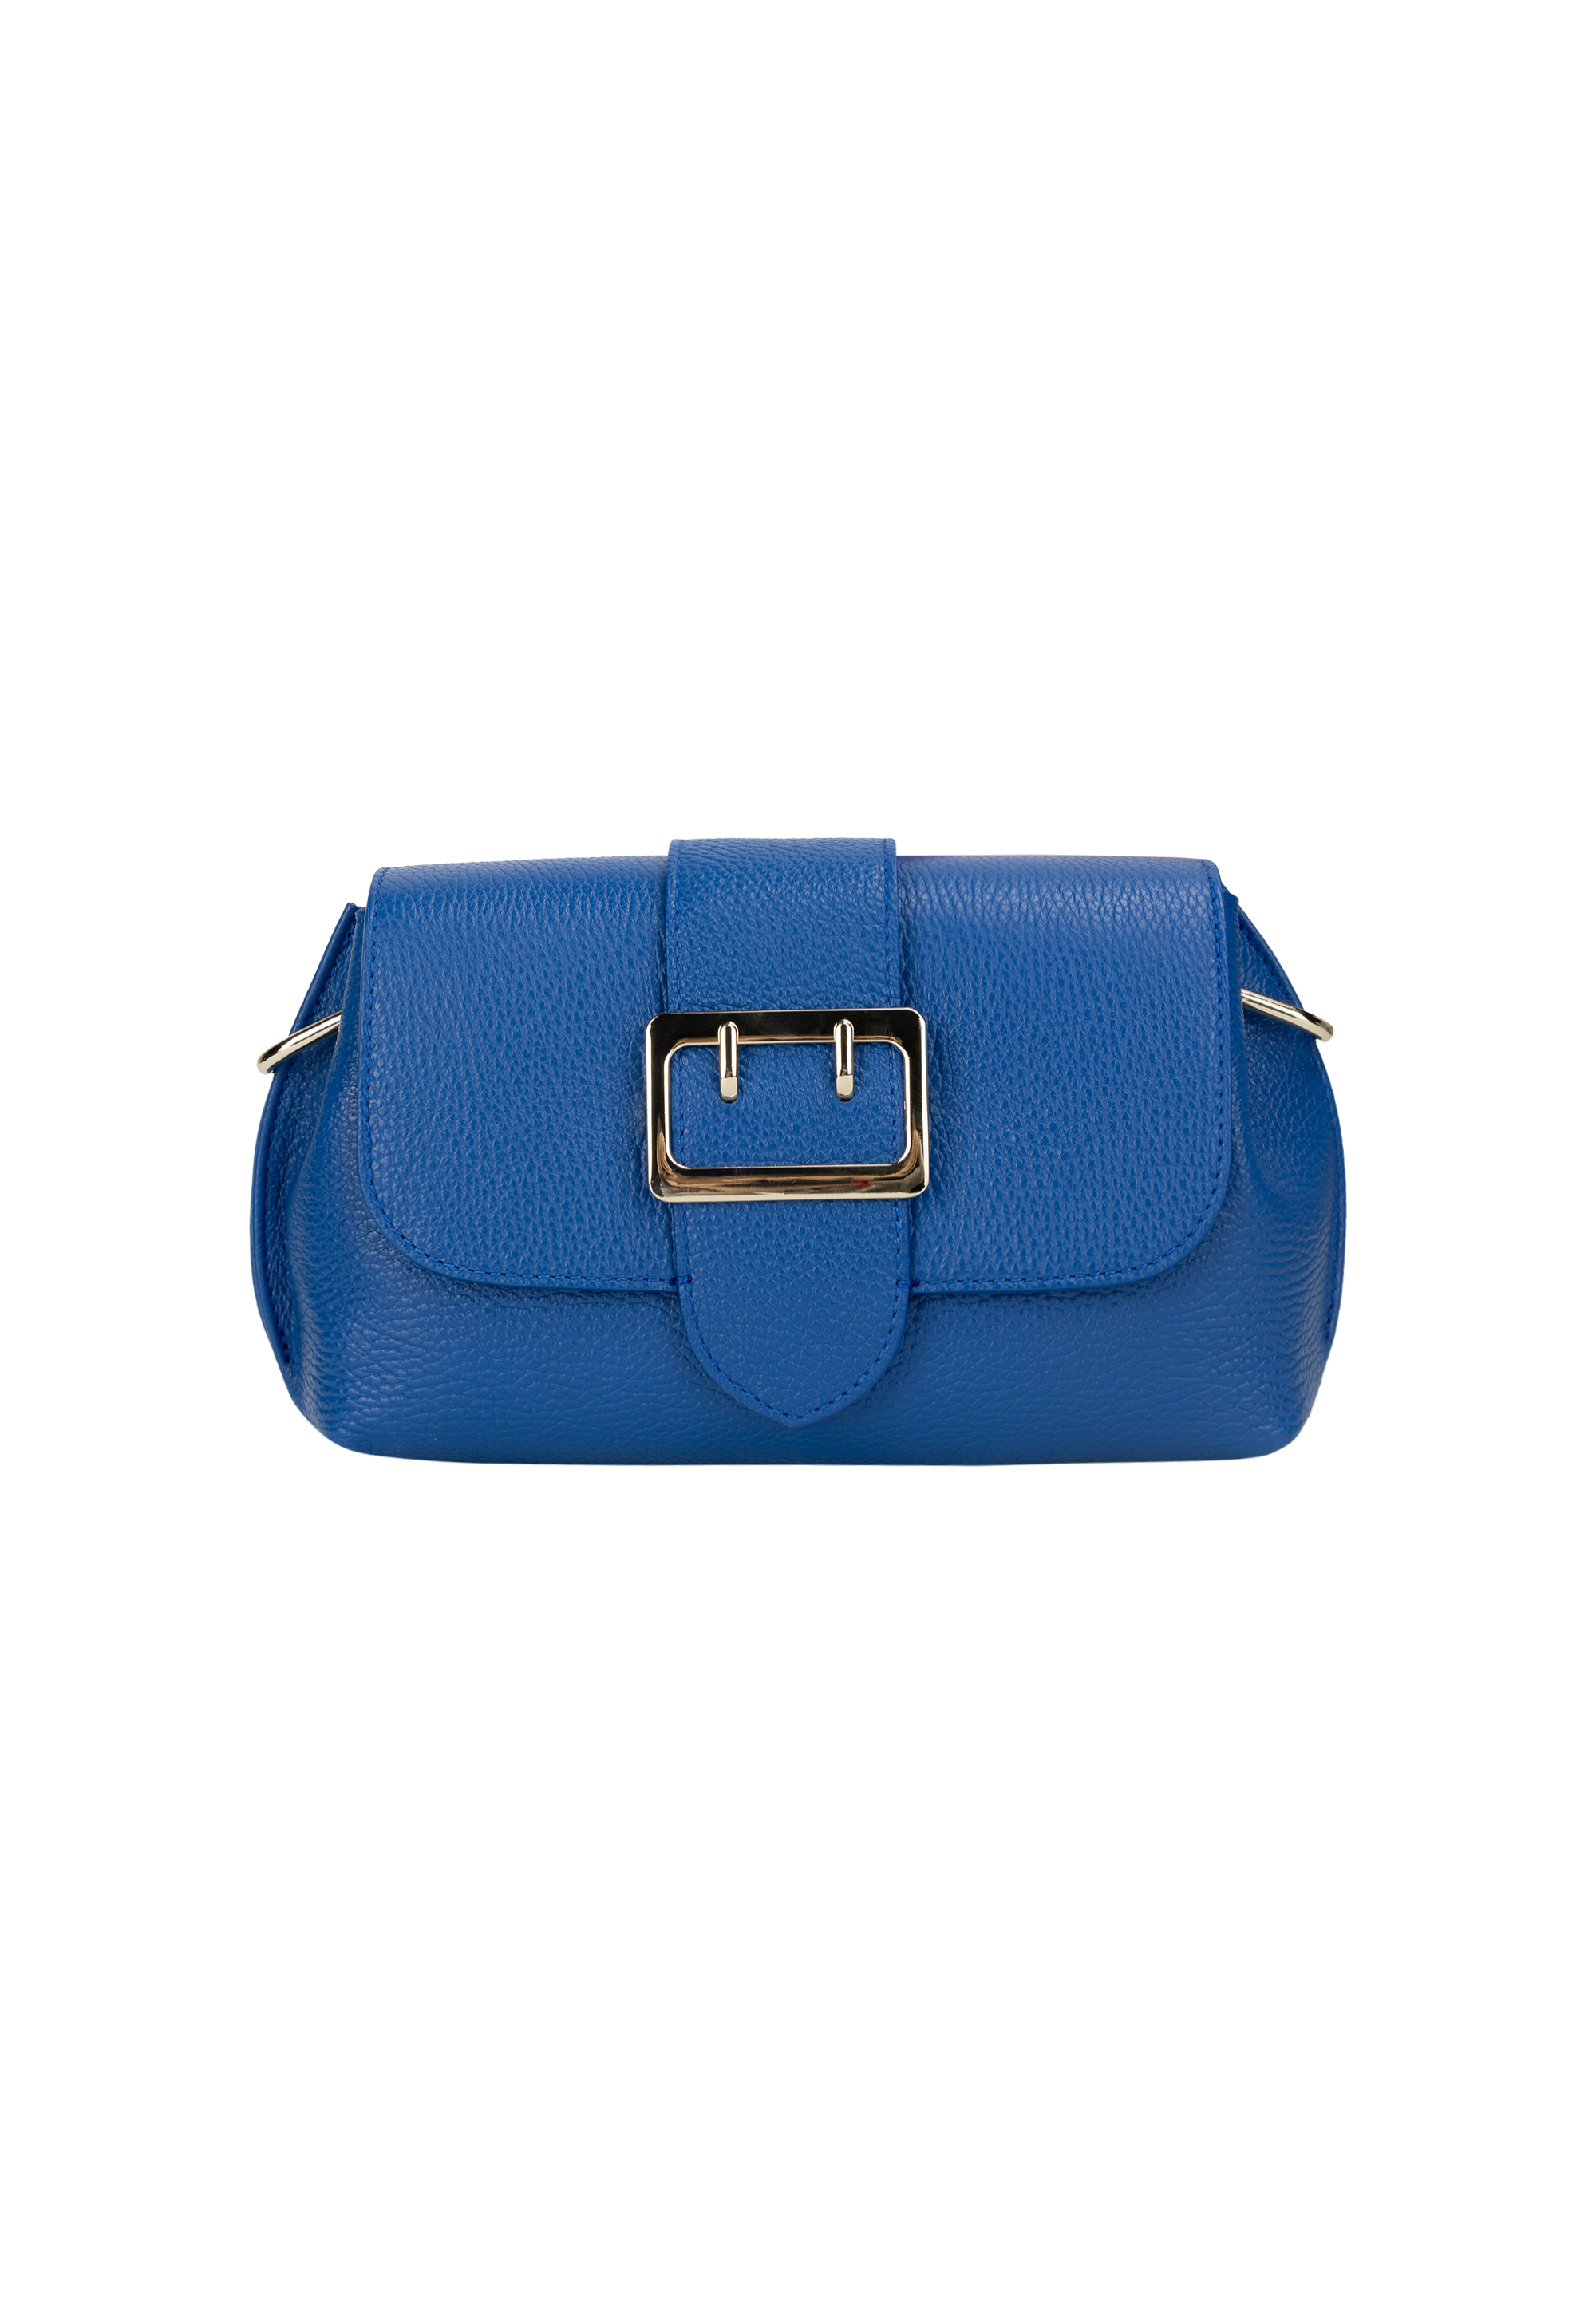 Сумка через плечо NAEMI Handtasche, цвет Azurblau сумка через плечо naemi handtasche цвет leo